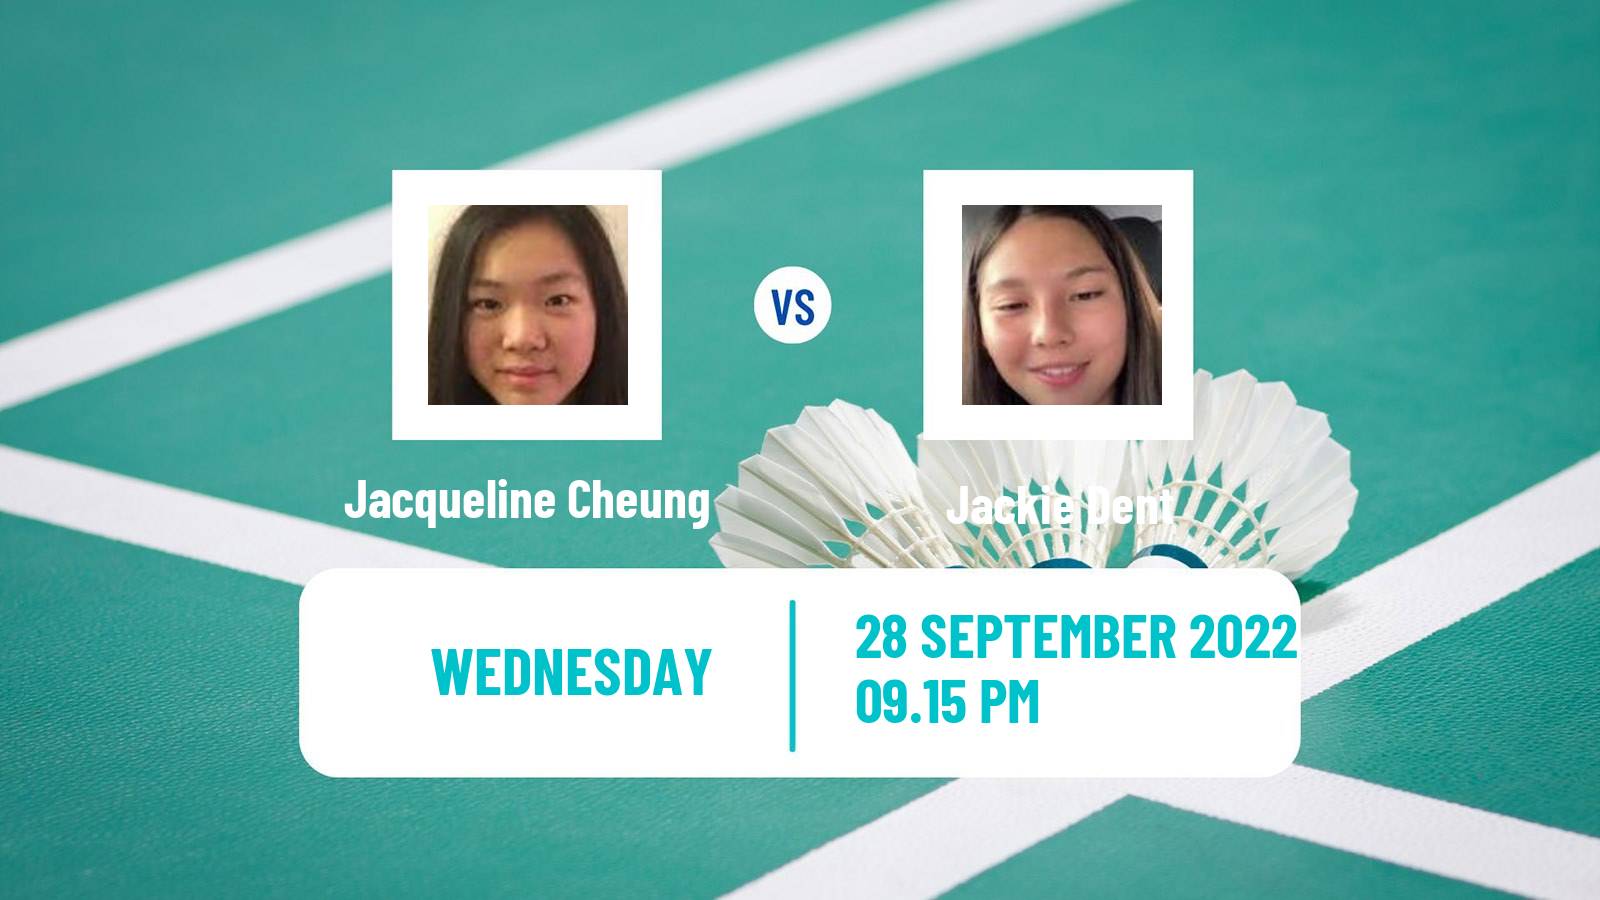 Badminton Badminton Jacqueline Cheung - Jackie Dent